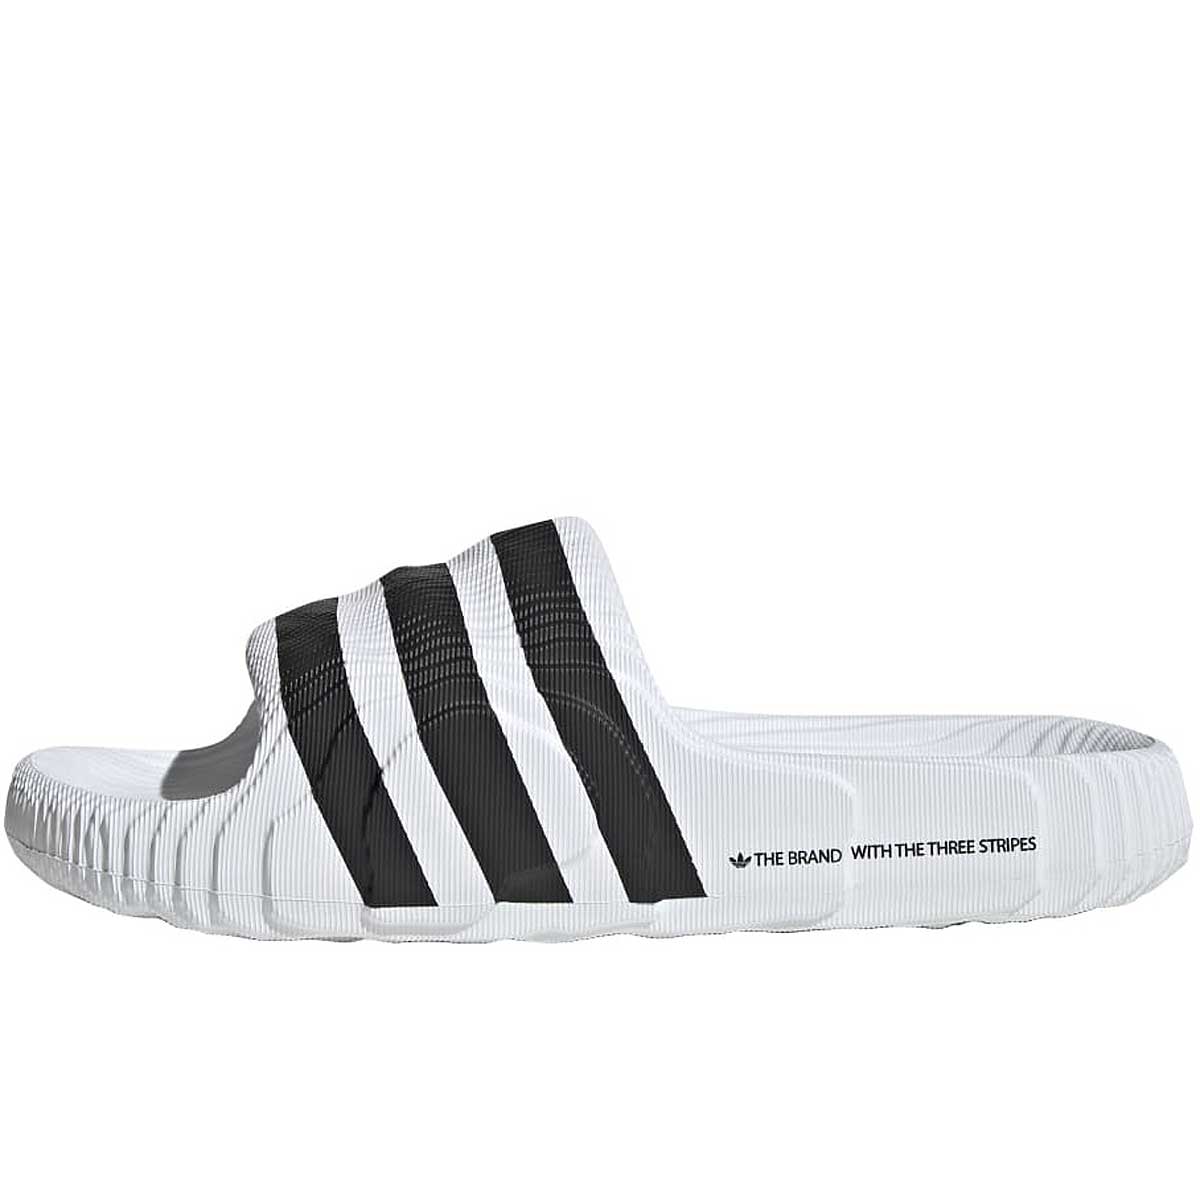 Adidas Adilette 22, Weiß/schwarz EU46 2/3